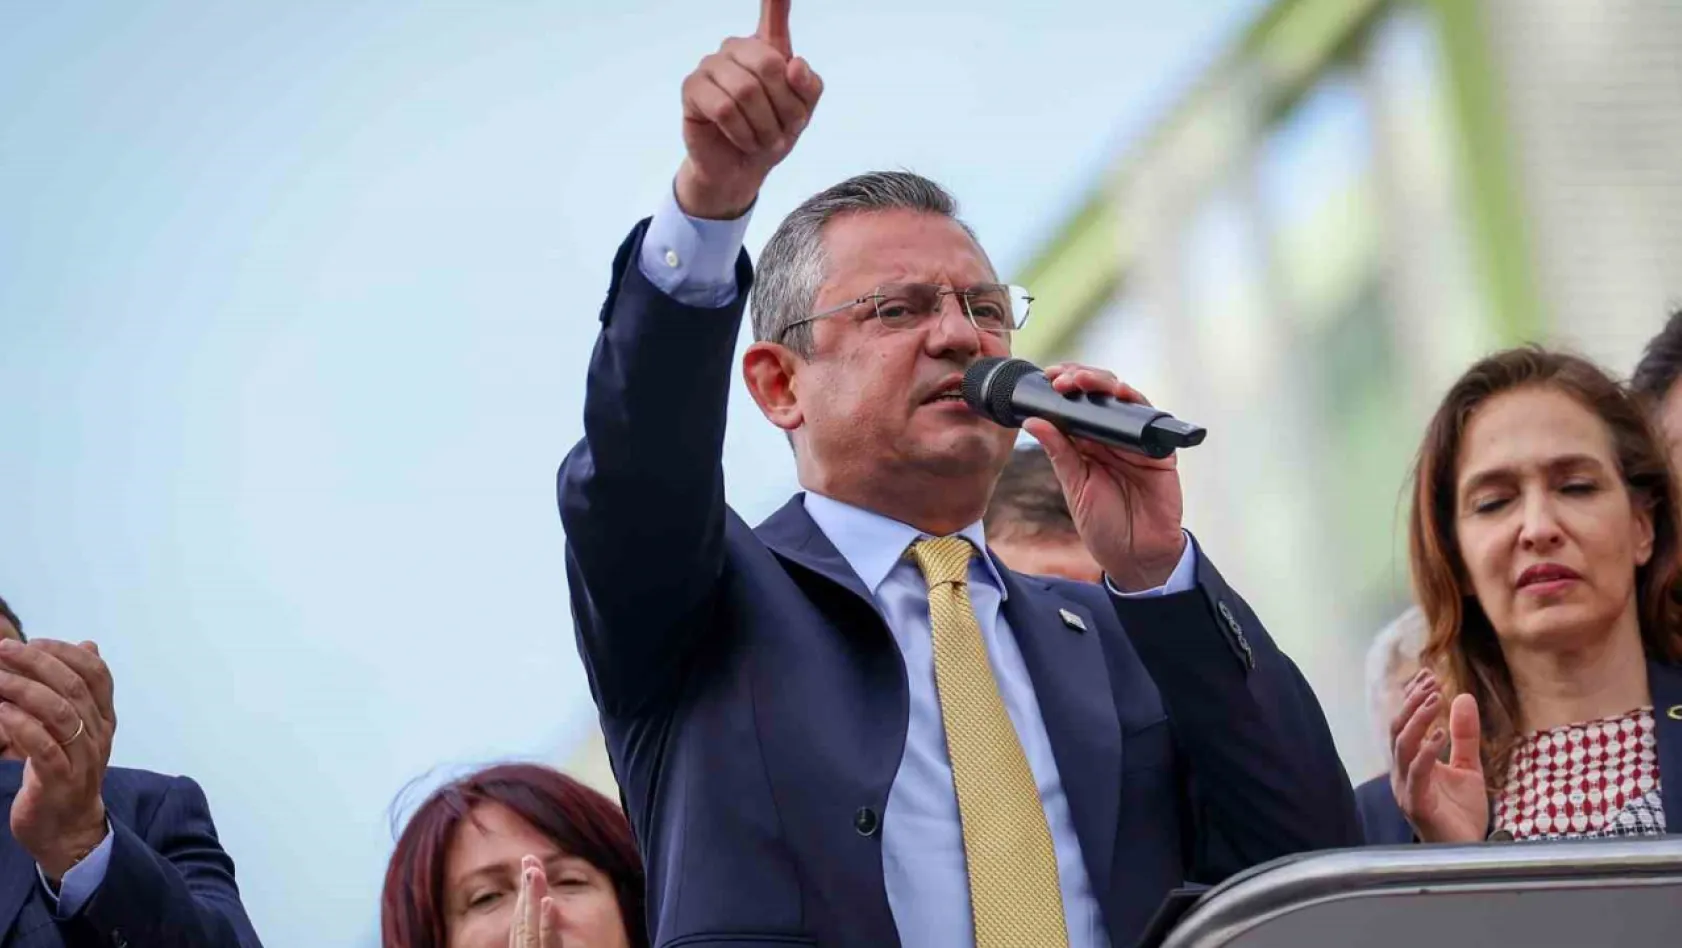 CHP Genel Başkanı Özel: 'Türkiye İttifakı kazandı, Türkiye kazanacak'